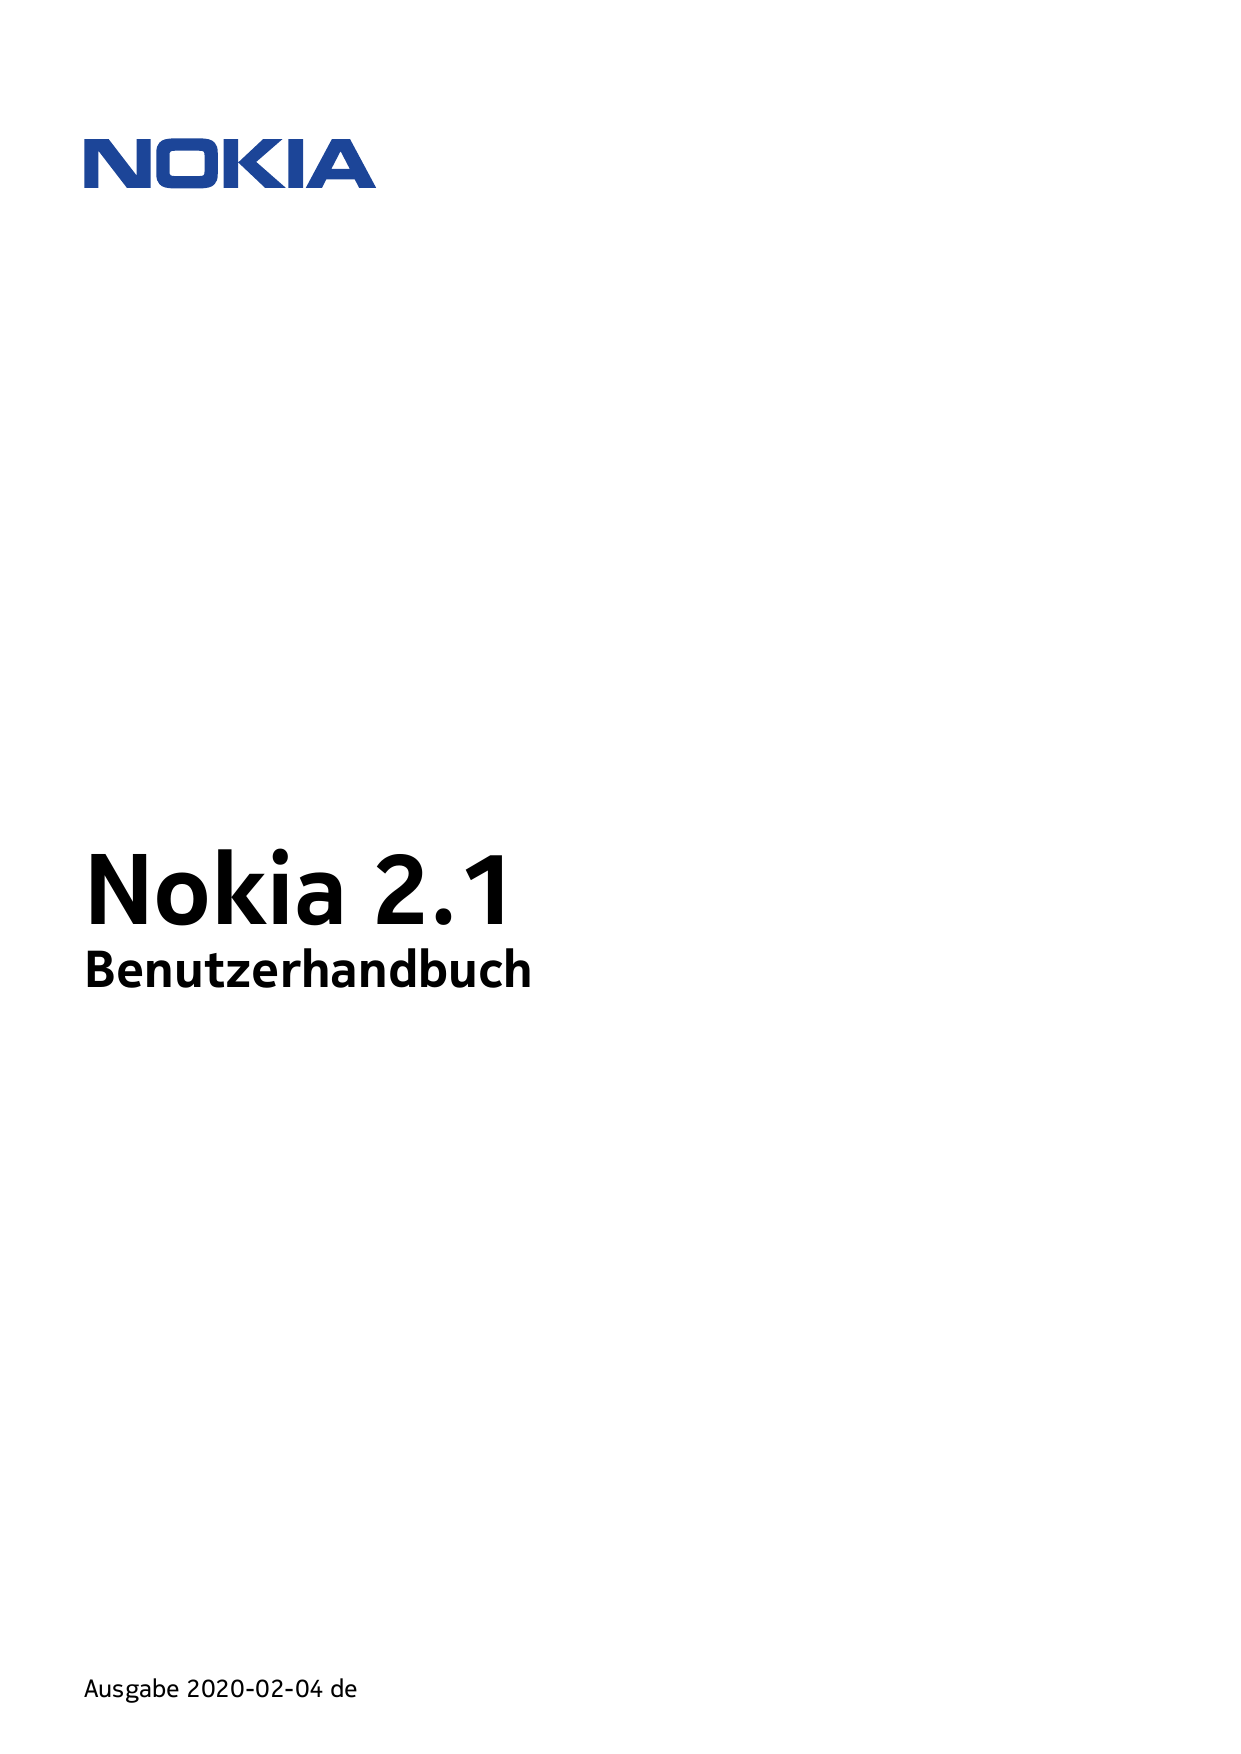 Nokia 2.1BenutzerhandbuchAusgabe 2020-02-04 de